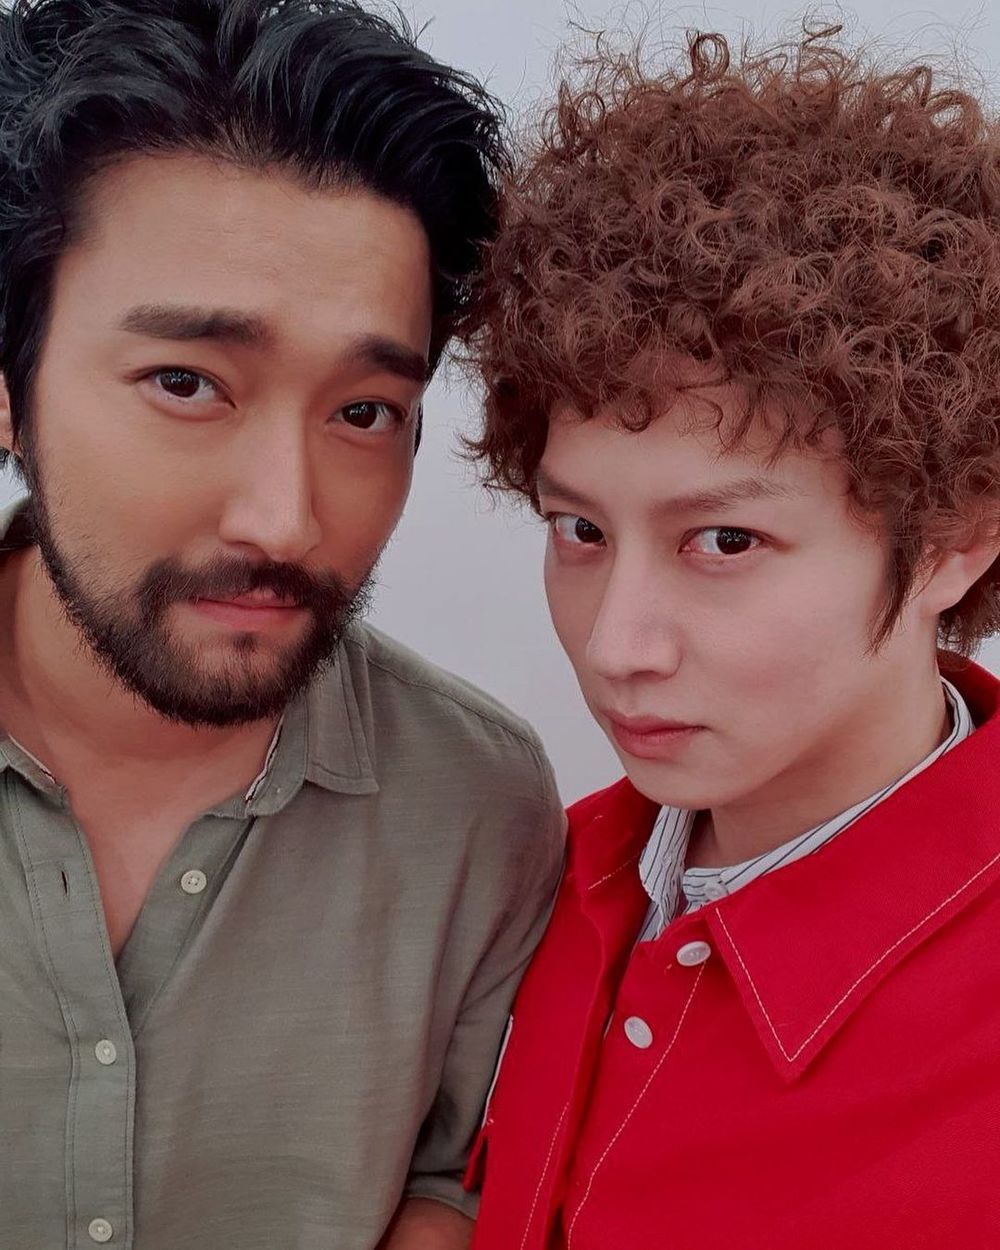  
Siwon và Heechul trong bức ảnh mới. (Ảnh: IG)